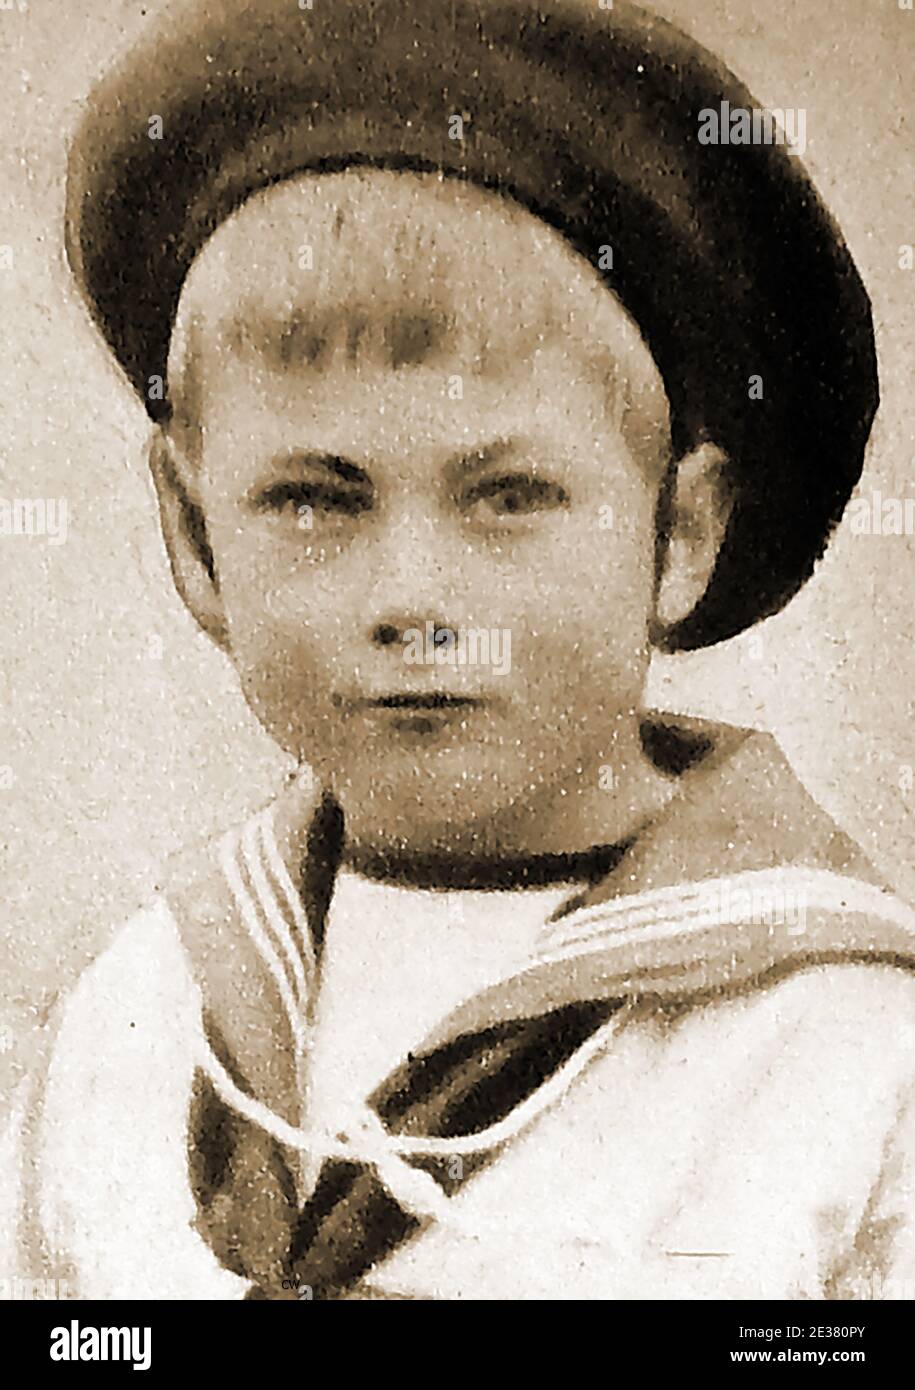 Ein Porträt von Prinz John von Großbritannien --- John Charles Francis 'Johnnie' (1905 – 1919) war der fünfte Sohn und jüngste der sechs Kinder von König George V (ehemals Prince of Wales) und Königin Mary. Er war ein kränkliches Kind und soll Epilepsie-Lernschwierigkeiten und Autismus haben. Angeblich versteckt vor der Öffentlichkeit im Sandringham House, wurde er von seiner Gouvernante, Charlotte Jane 'Lala' Bill, betreut und soll mit lokalen Kindern spielen. Prinz John starb in Sandringham im Jahr 1919 angeblich nach einem schweren fit, und wurde in der Nähe St. Mary Magdalene Kirche begraben Stockfoto